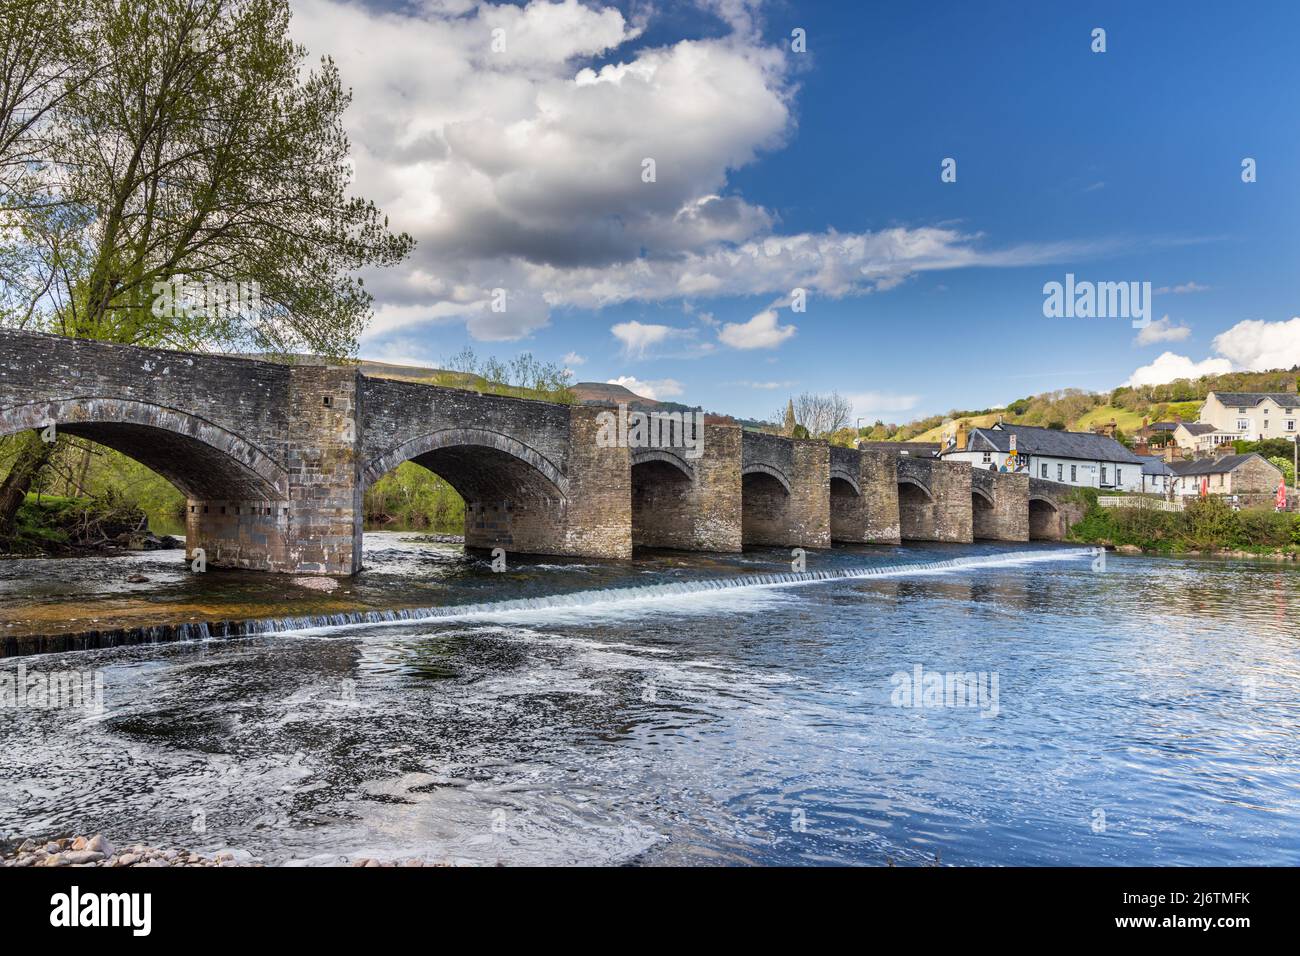 Le pont Crickhowell, un pont en pierre voûté datant de 18th ans qui enjambe la rivière Usk à Crickhowell, Brecon Beacons, Powys, pays de Galles. Banque D'Images